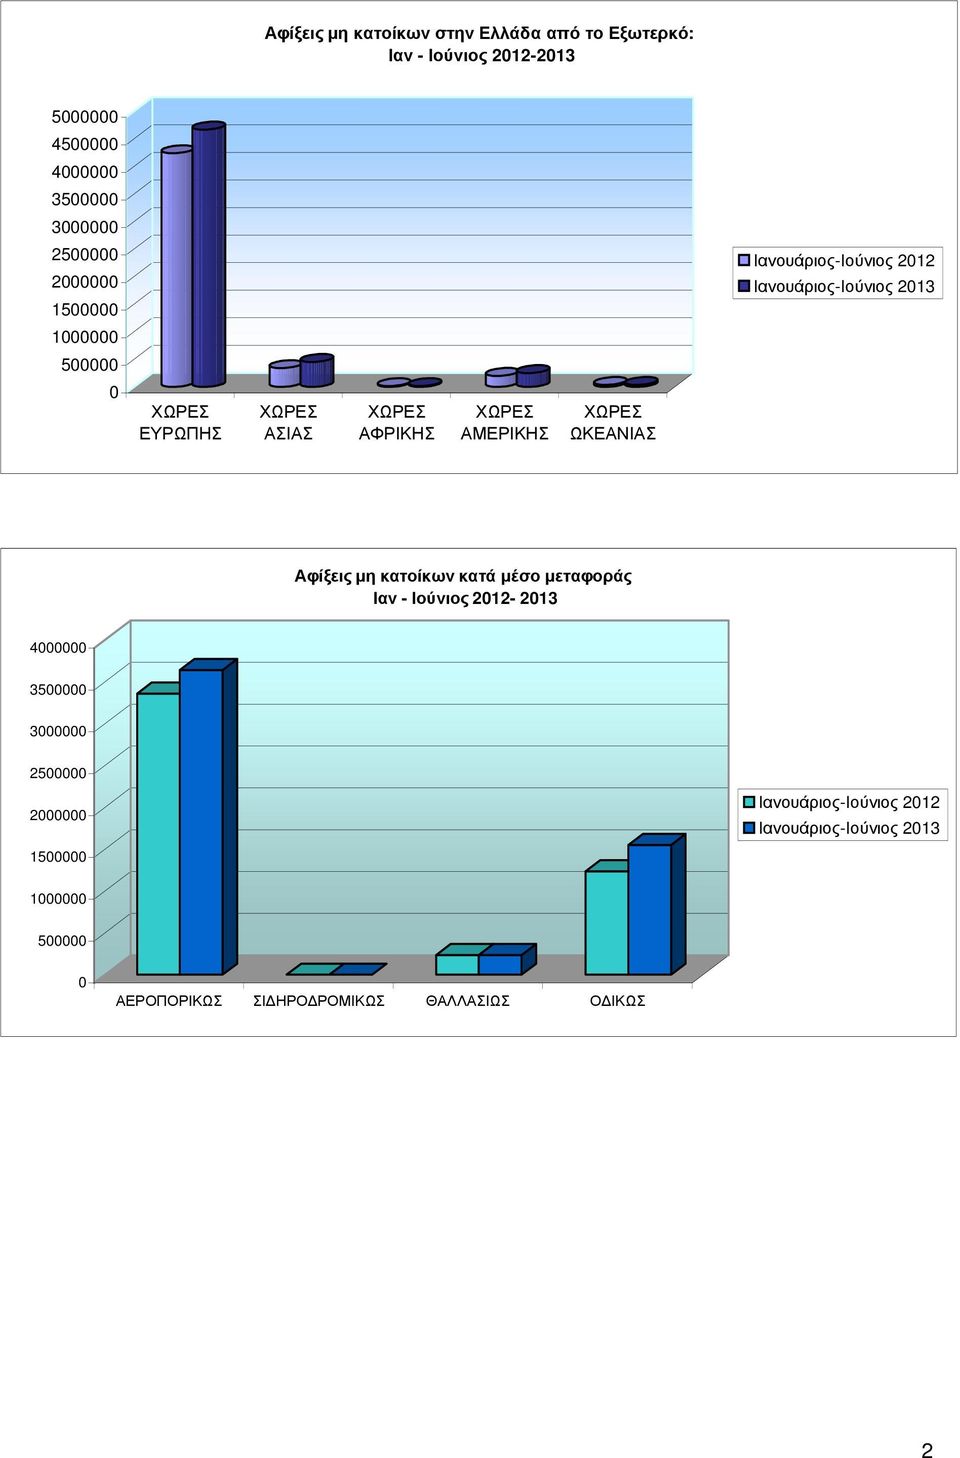 ΑΜΕΡΙΚΗΣ ΩΚΕΑΝΙΑΣ Αφίξεις µη κατοίκων κατά µέσο µεταφοράς Ιαν - Ιούνιος 2012-2013 4000000 3500000 3000000 2500000